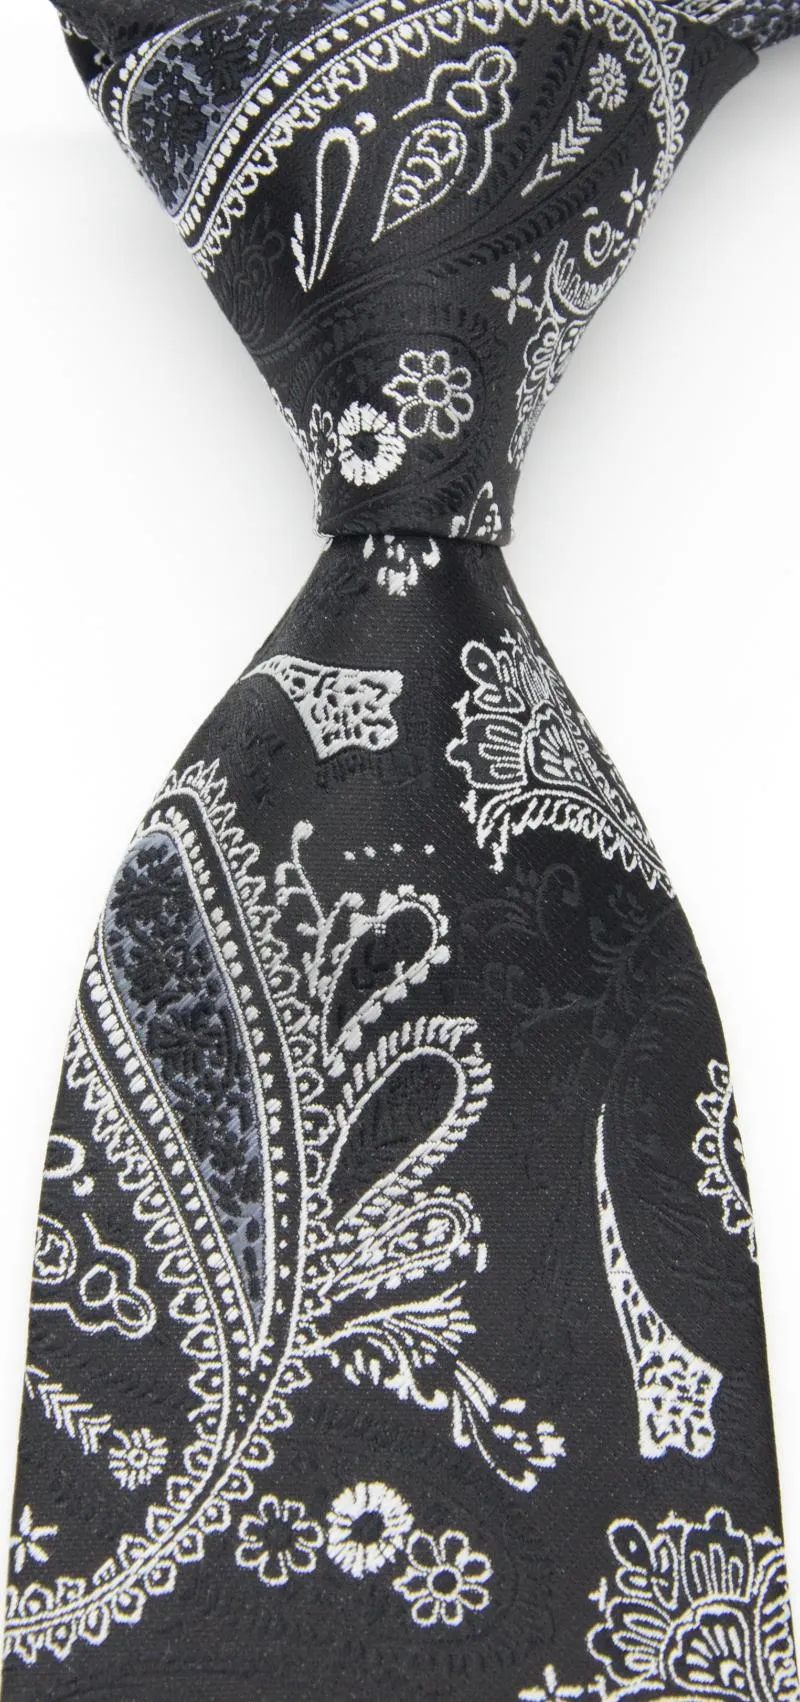 Bow Ties ipek çiçek kravat erkek paisley baskı siyah beyaz erkekler için resmi iş lüks düğün parti kravatlar